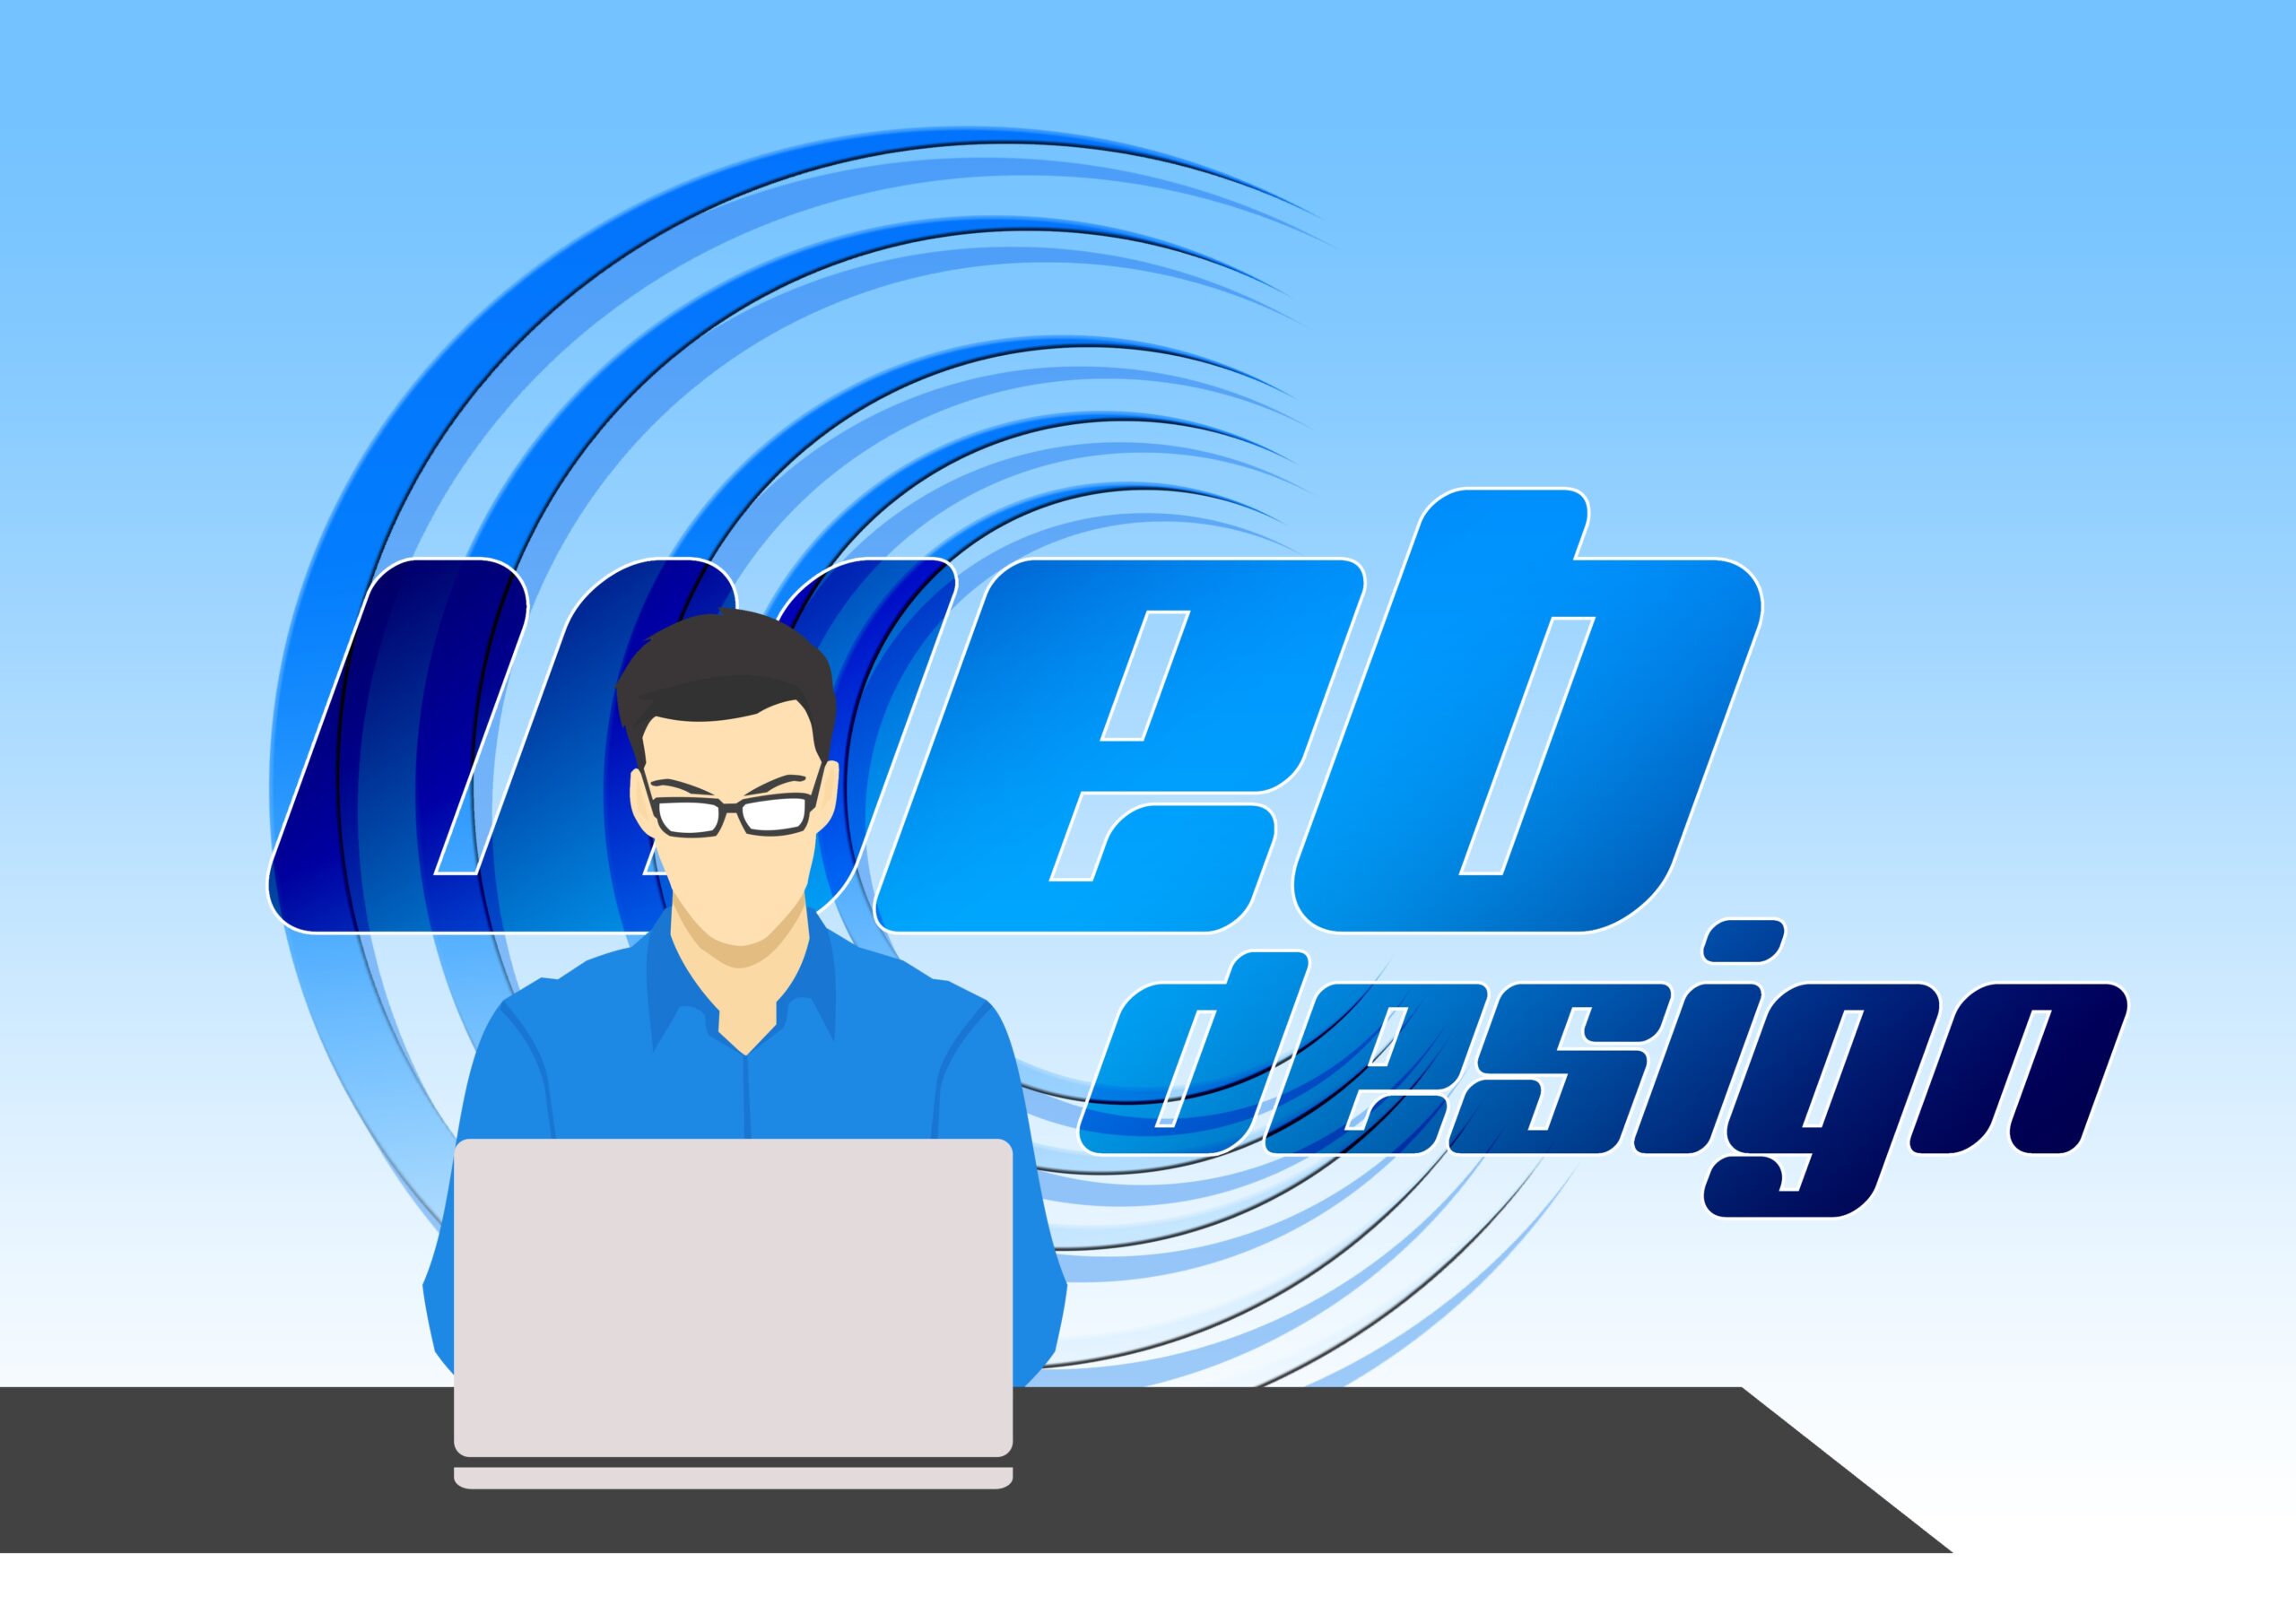 No.1 Professional Web Design Services - Ace amaze samples